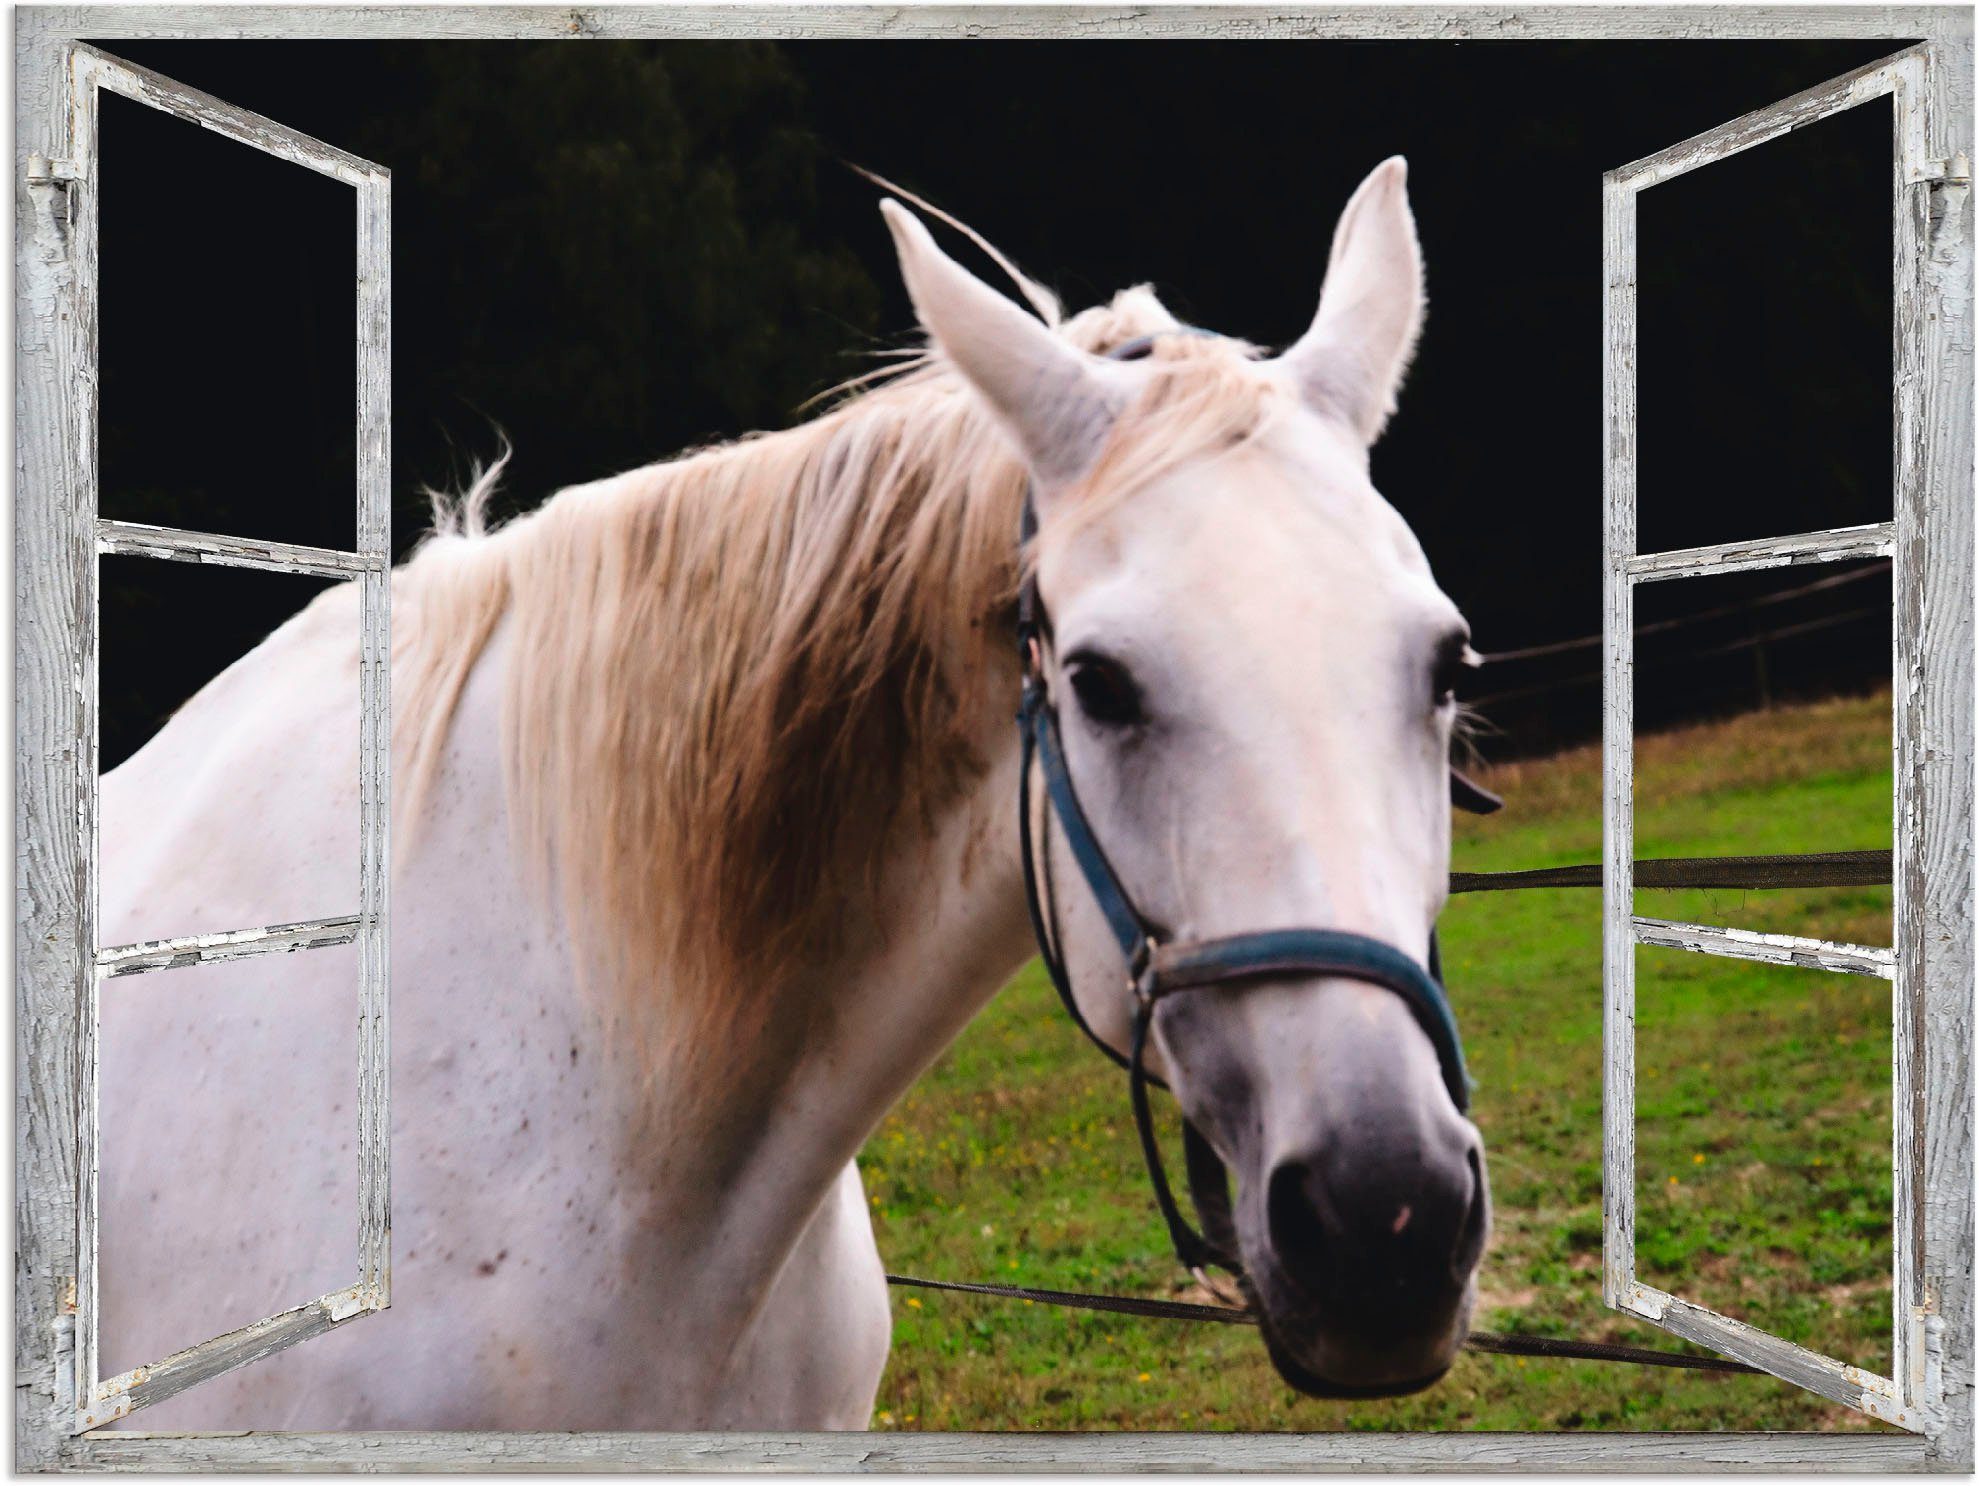 Artland Artprint Blik uit het venster - wit paard in vele afmetingen & productsoorten - artprint van aluminium / artprint voor buiten, artprint op linnen, poster, muursticker / wan